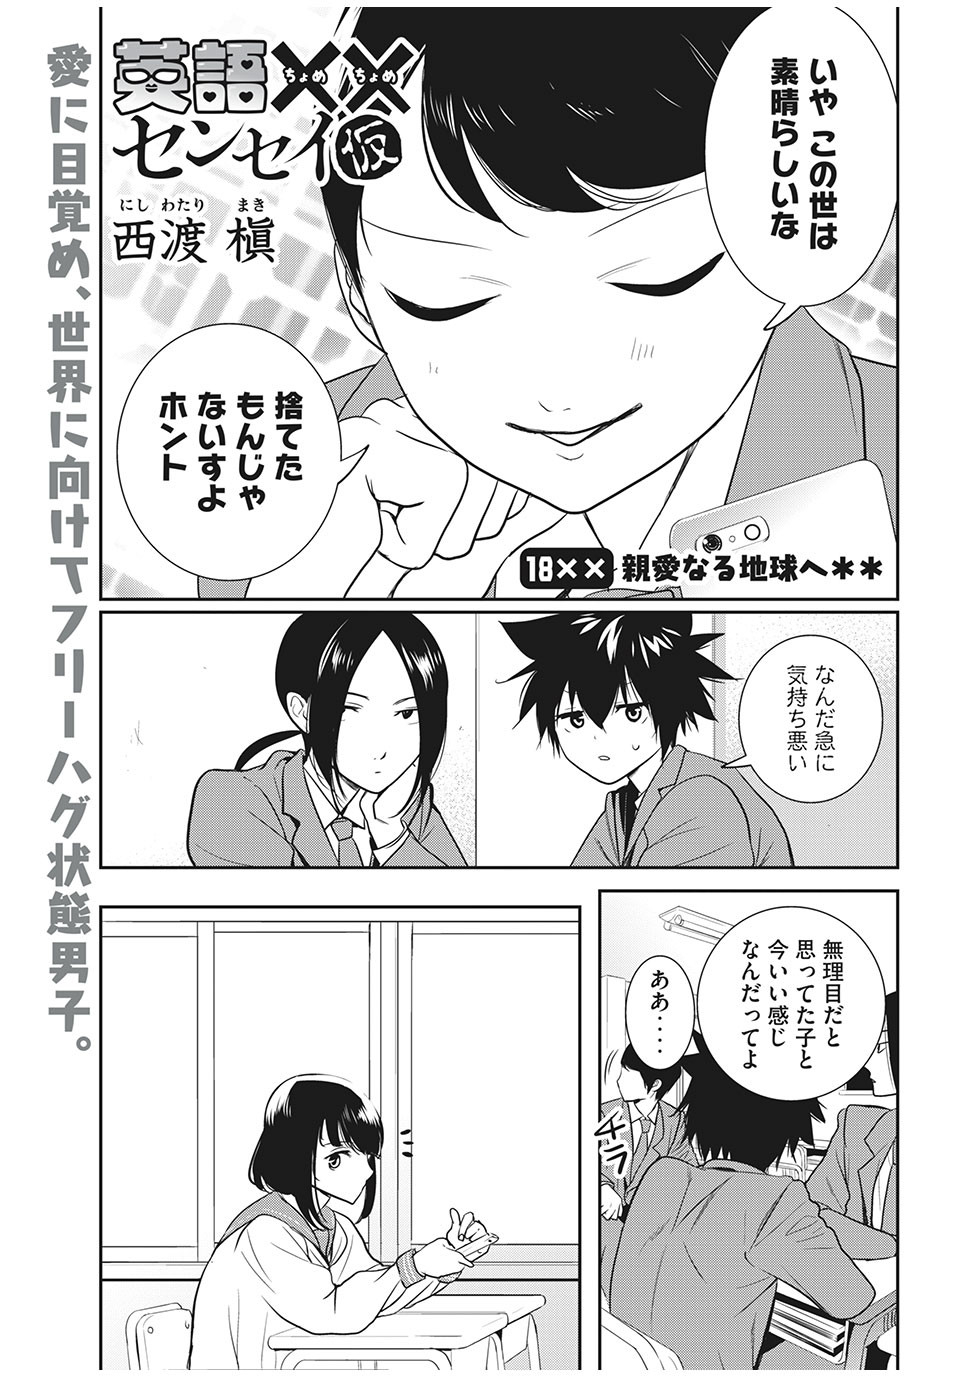 Eigo ×× Sensei - Chapter 18 - Page 1